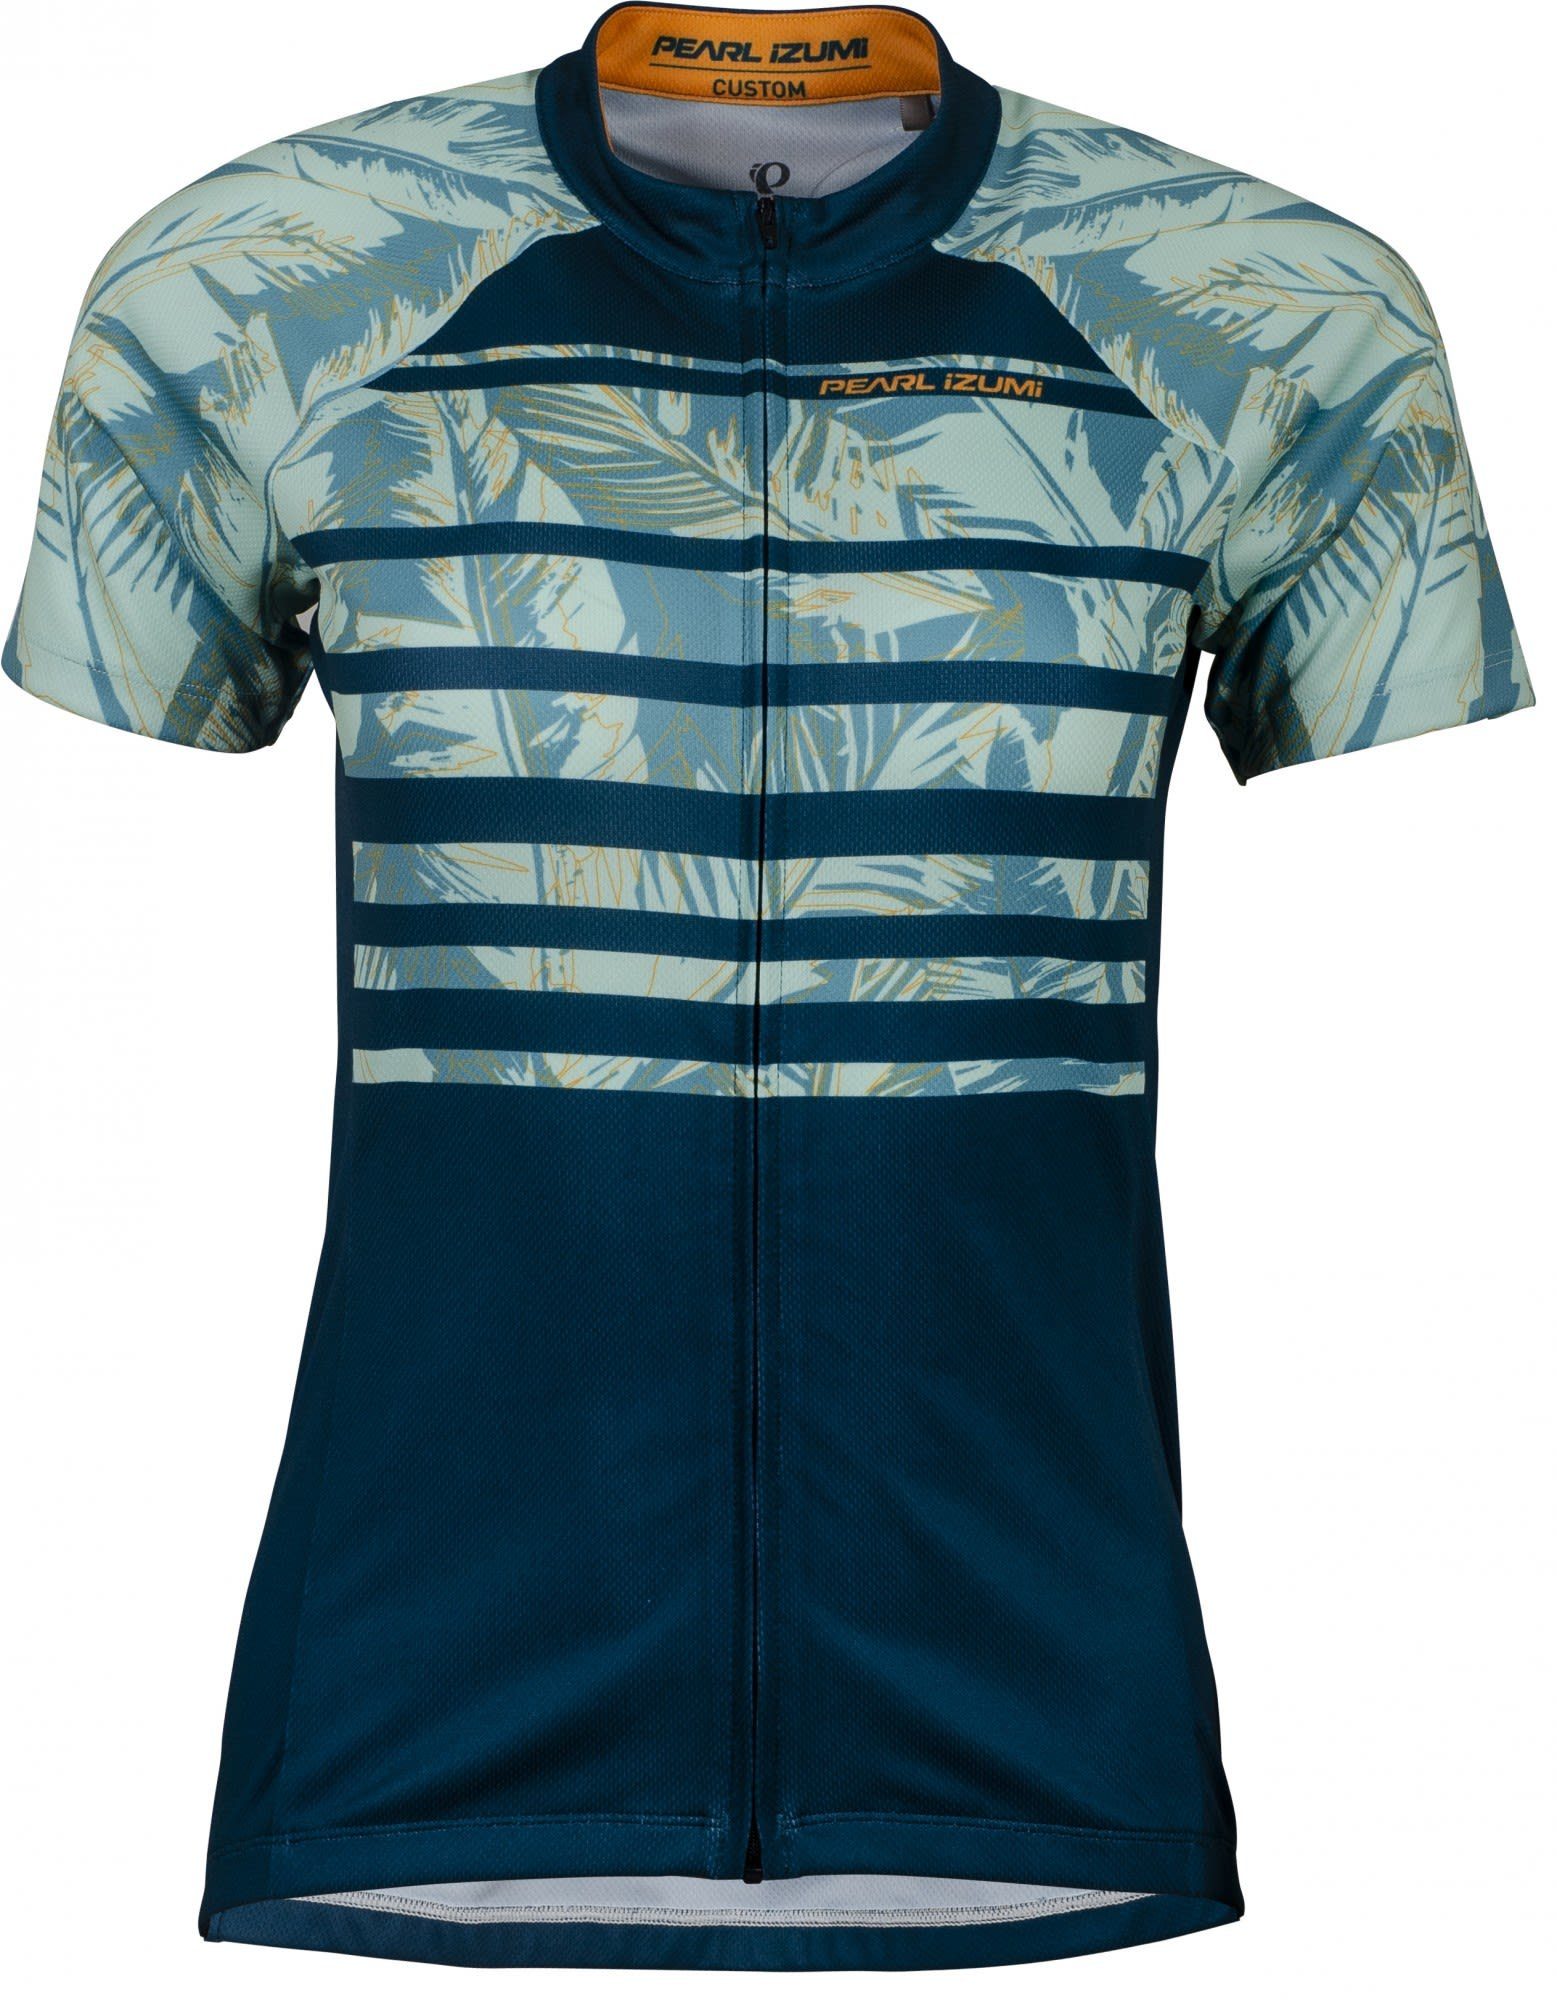 Pearl Feather Bl Damen - Izumi - W Pearl Palm Kurzarm-Shirt Jersey Striped Bl Gr Izumi T-Shirt Classic